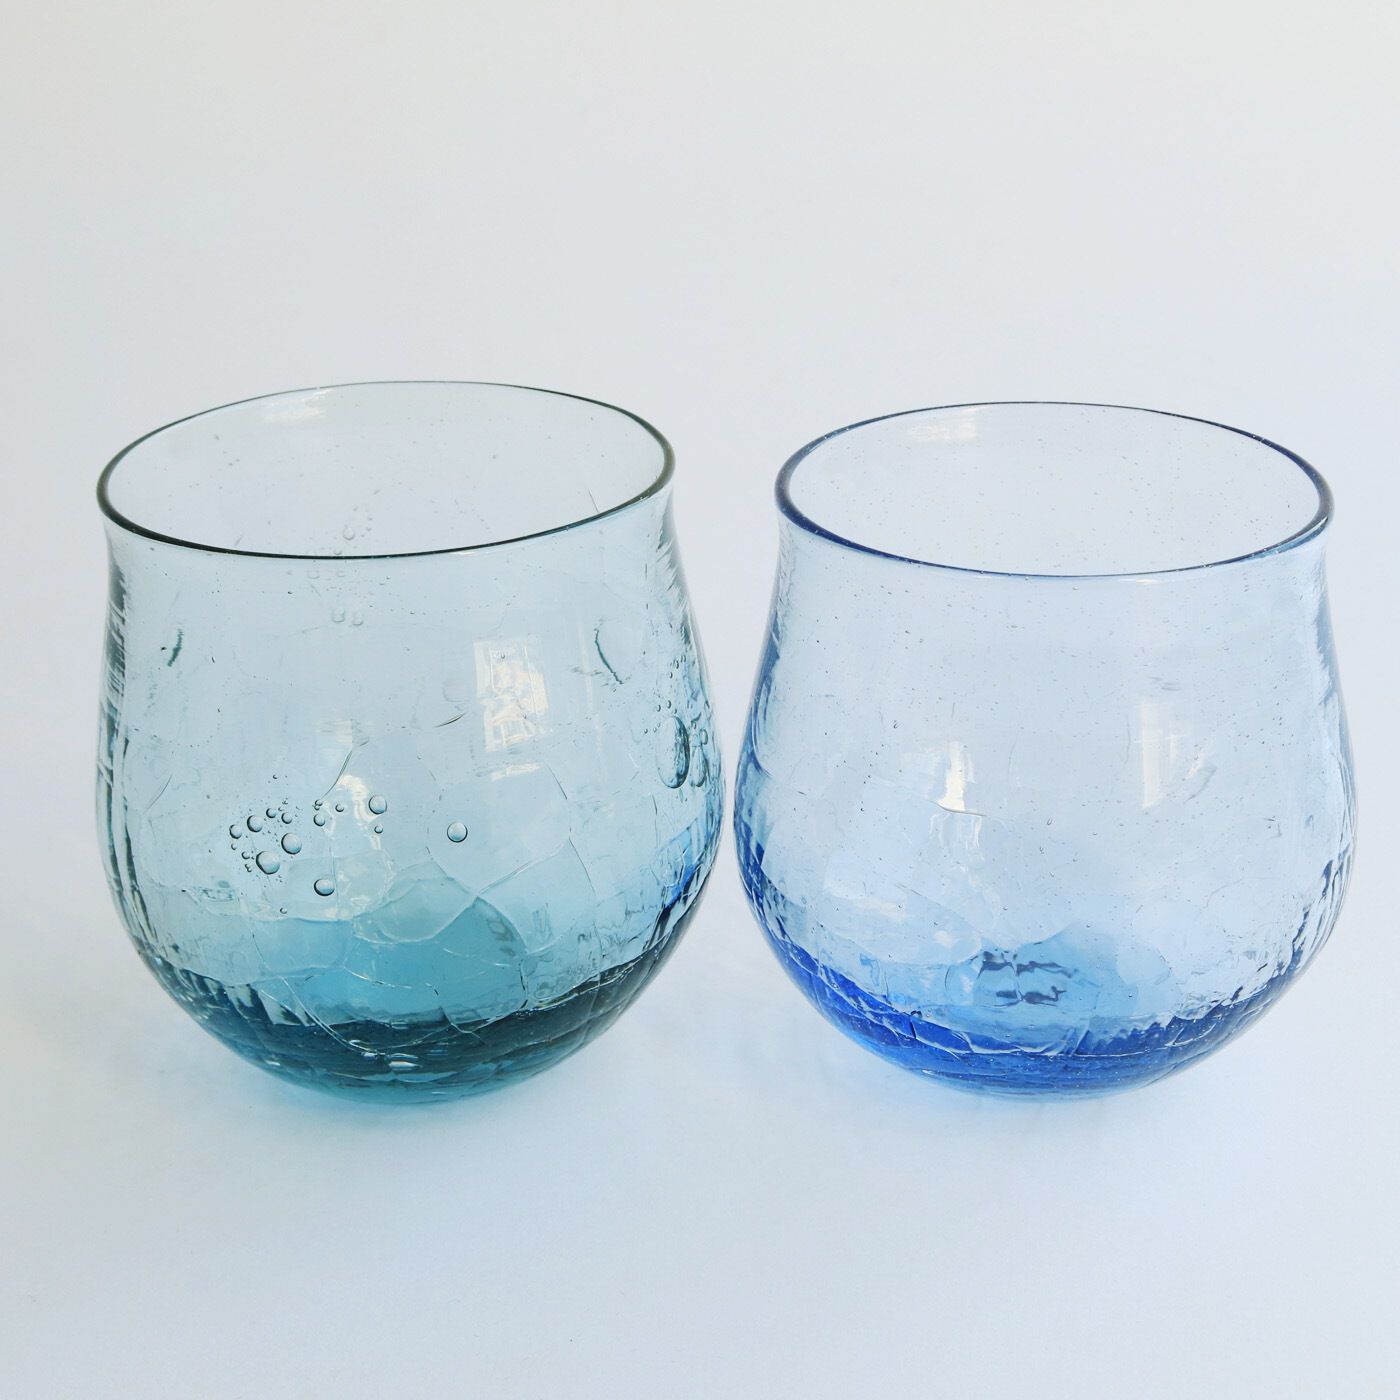 ＆Stories|小田原のガラス職人が作った 海と空が溶け込んだ宙吹きグラス〈2個セット〉|グラスを2個セットでお届け。色の混ざり具合もフォルムも、同じものはふたつとありません。どんなペアで届くかはお楽しみに。